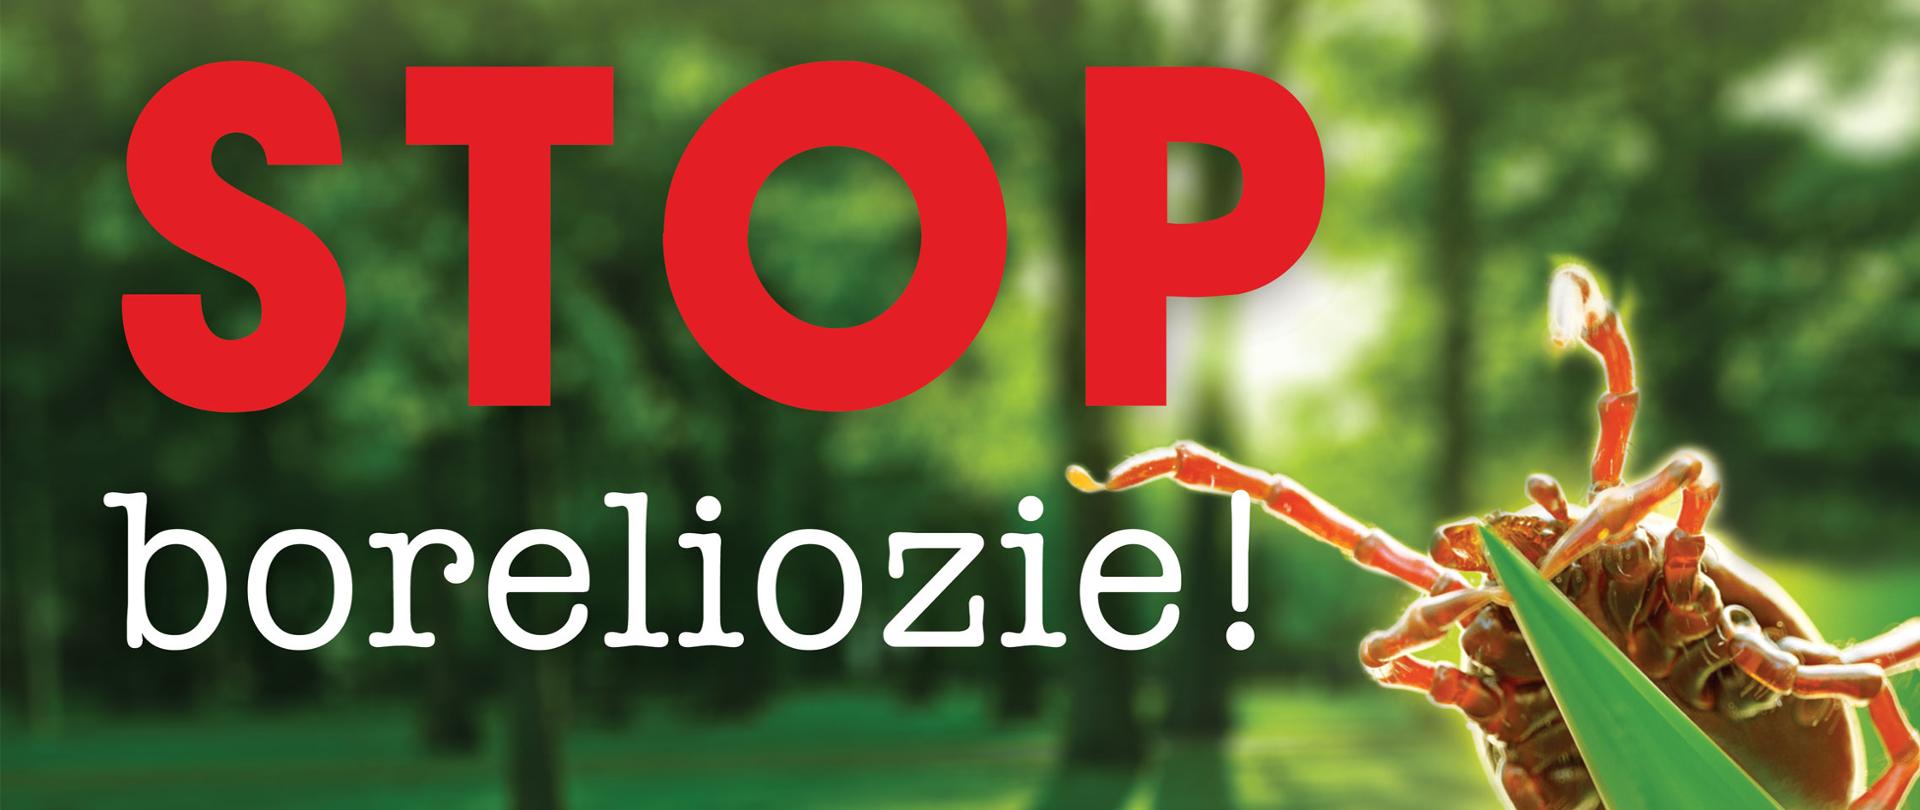 stop borelizoie